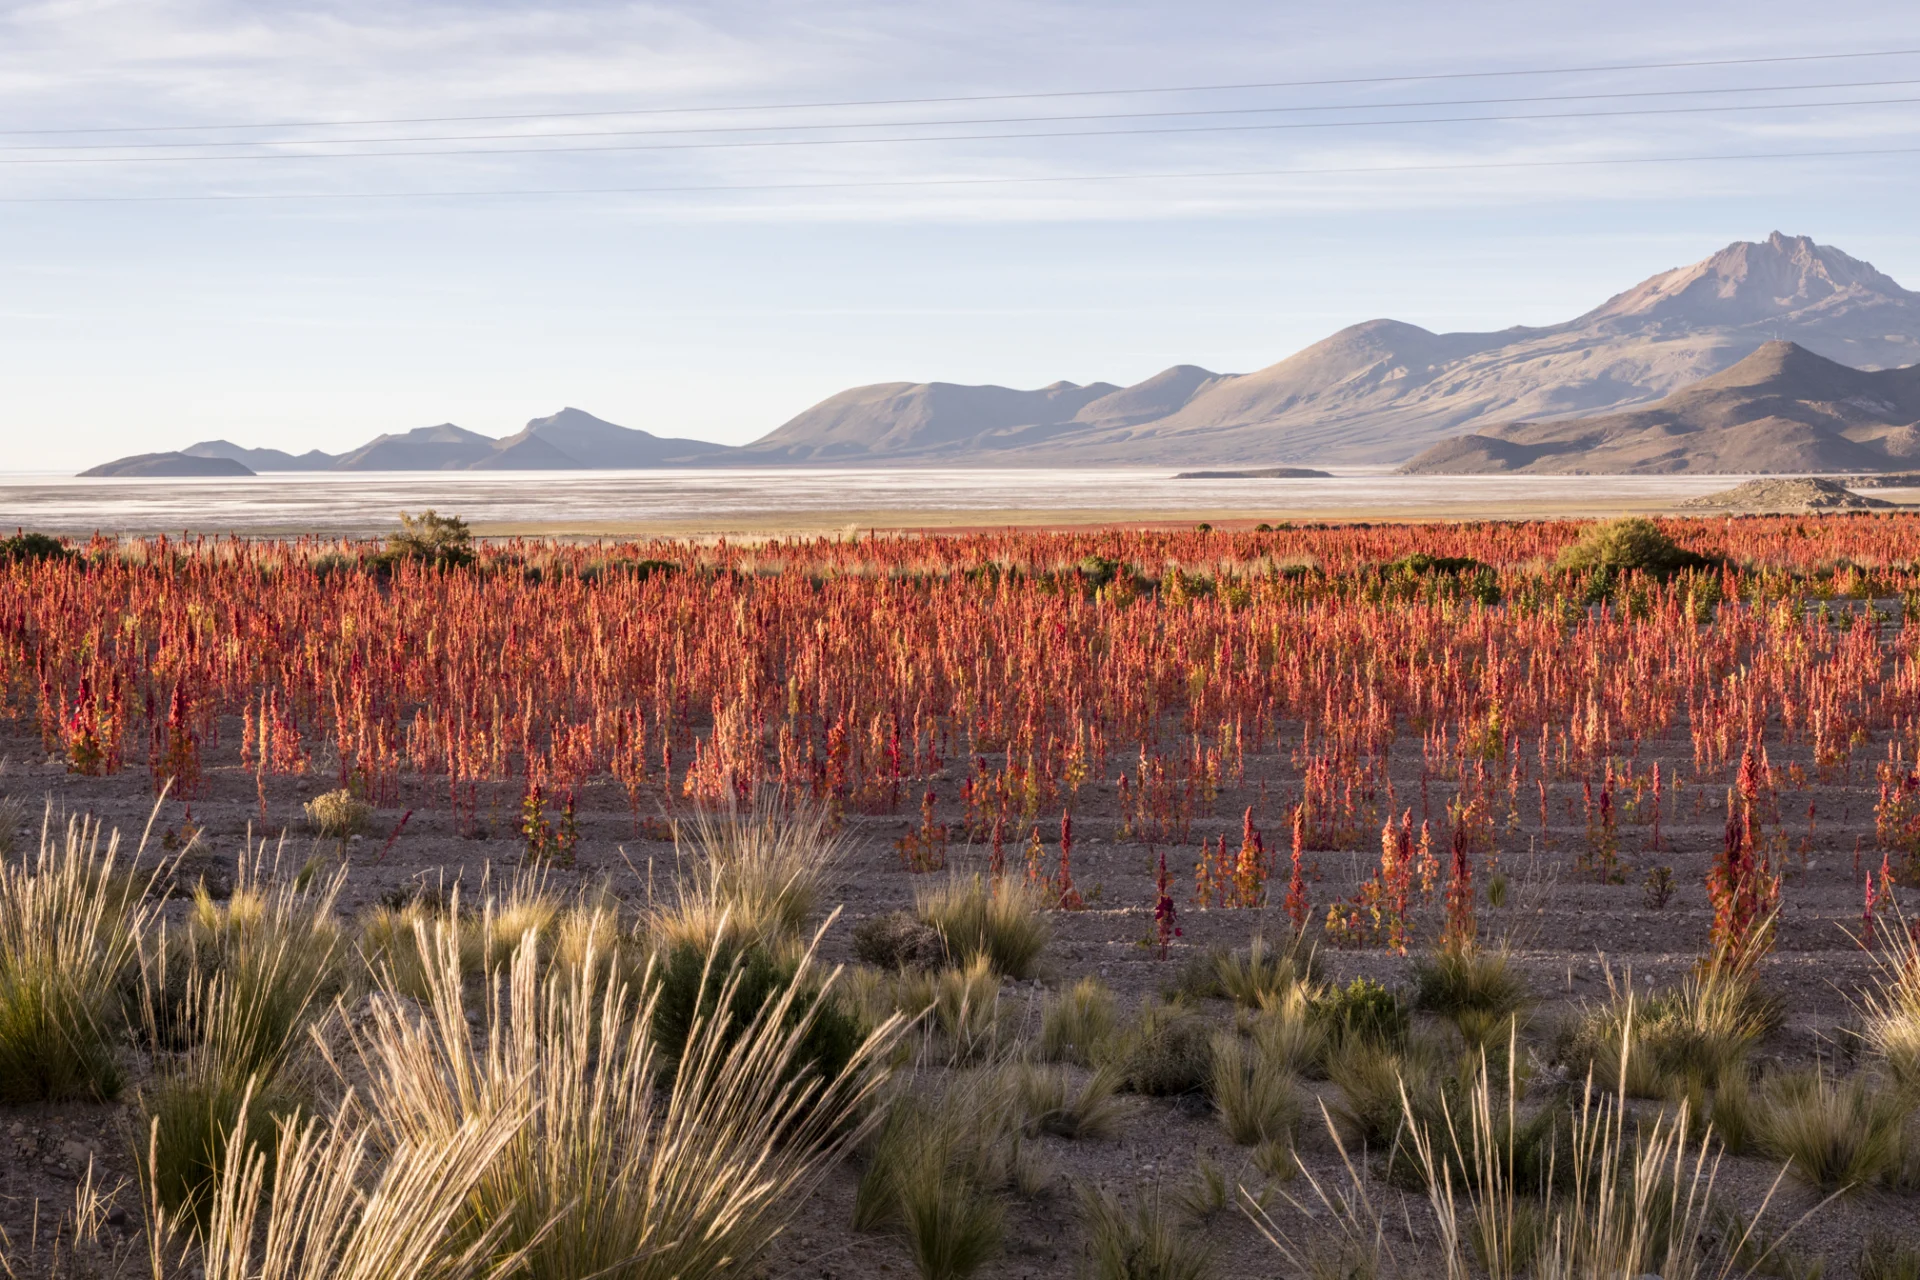 Un champ de quinoa au premier plan, derrière lui les collines des hauts plateaux boliviens